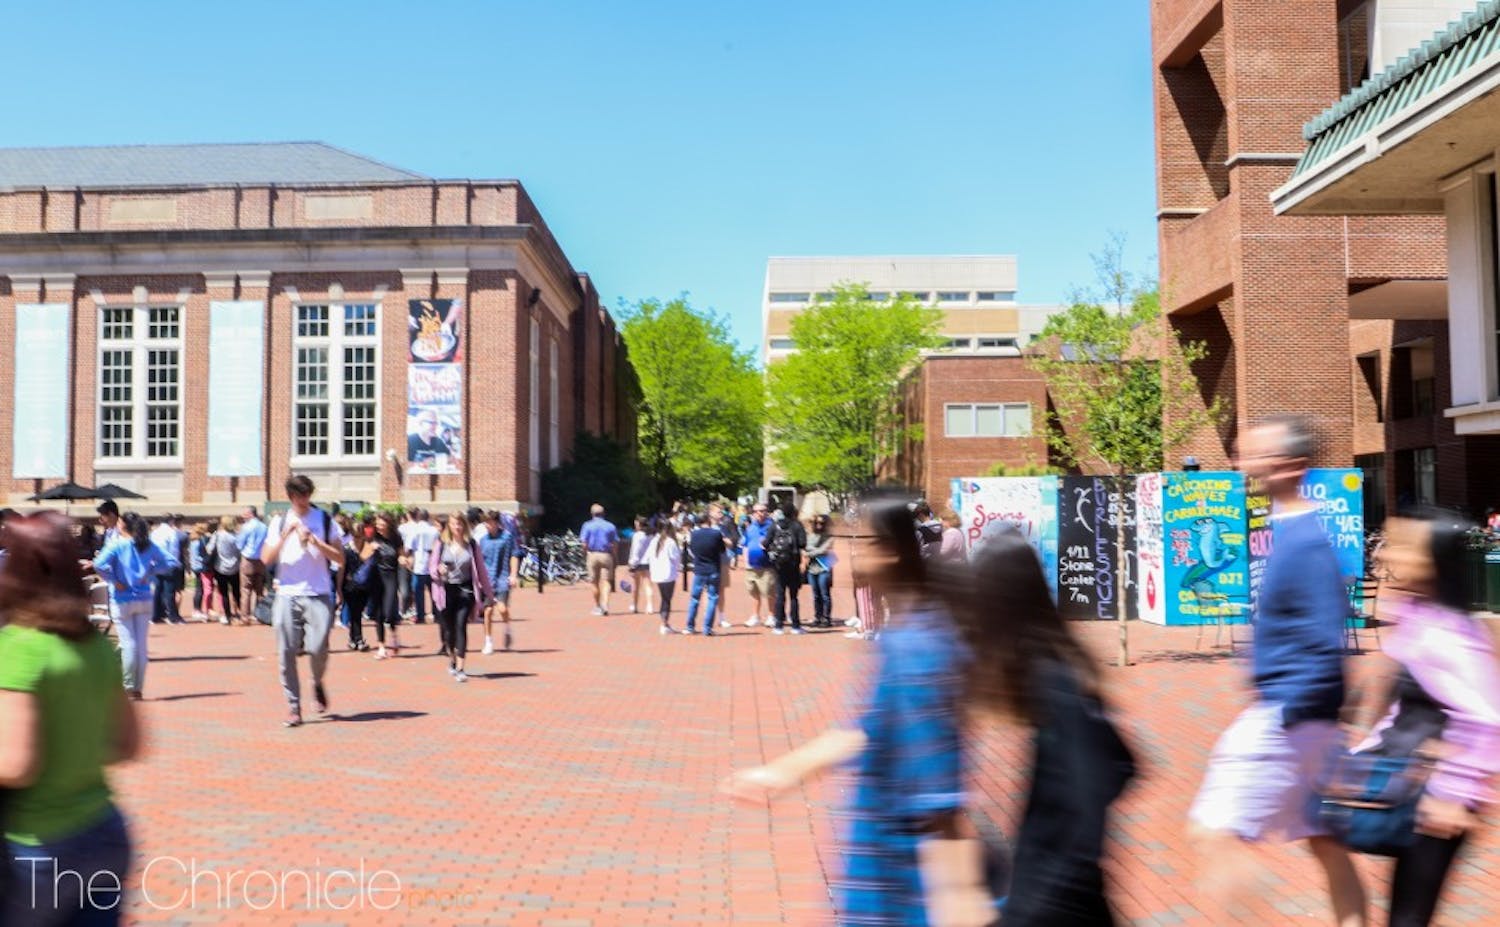 The University of North Carolina at Chapel Hill.